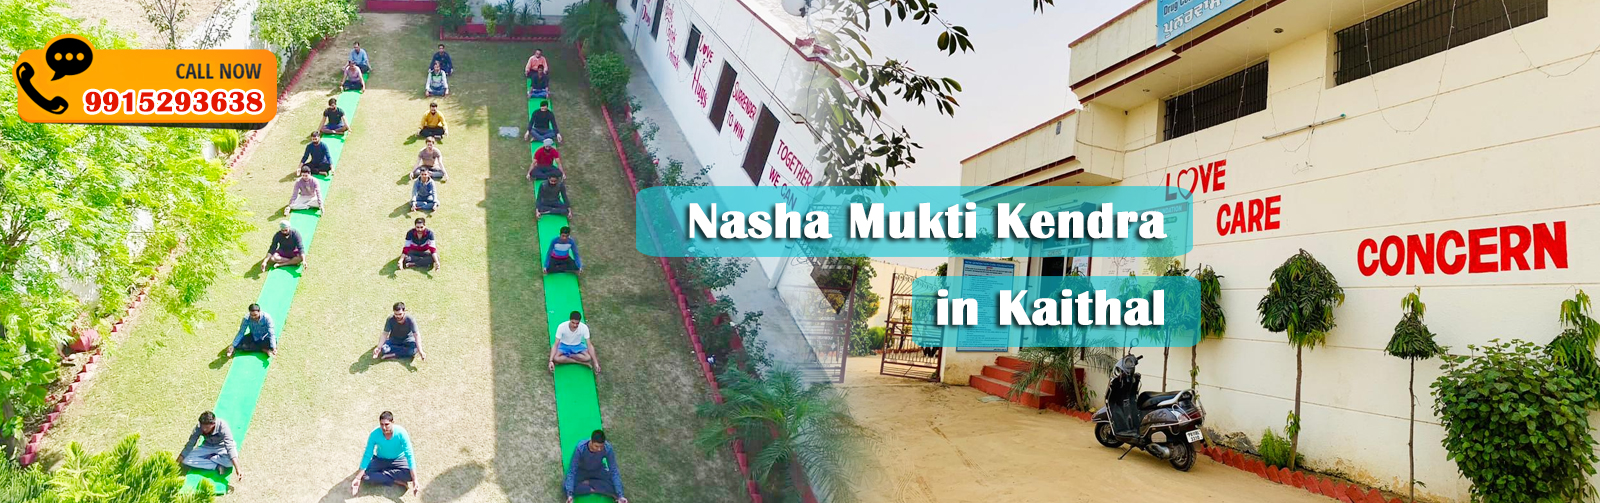 Nasha Mukti Kendra in Kaithal